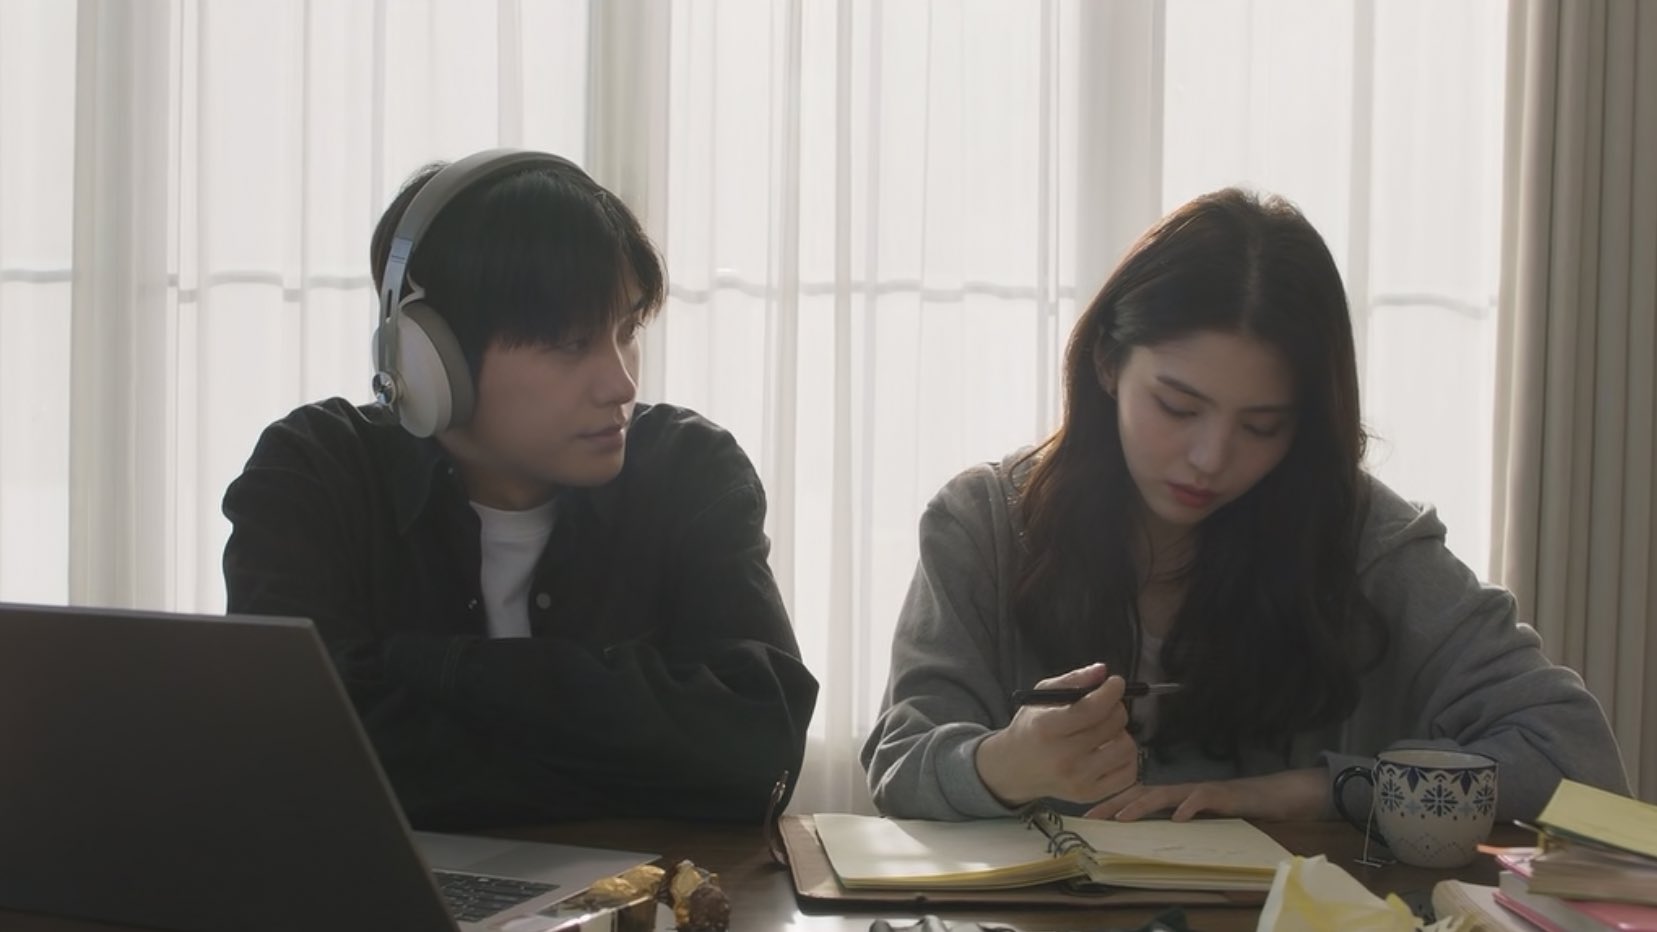 Nonton Episode 4 Drama Korea “Soundtrack No 1”